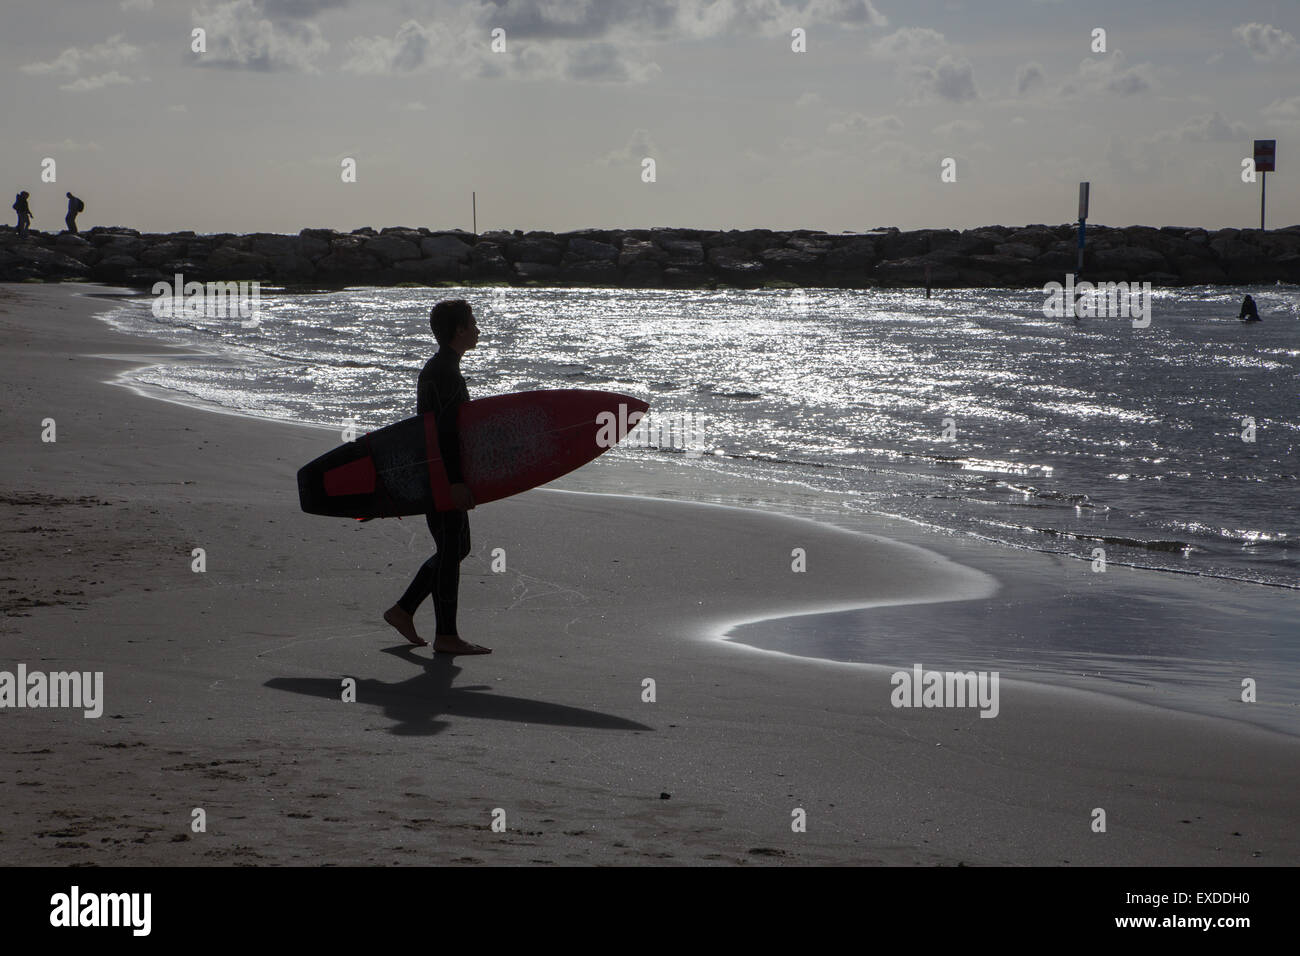 TEL AVIV, ISRAEL - 2. März 2015: Die Silhouette der Surfer am Strand von Tel Aviv. Stockfoto